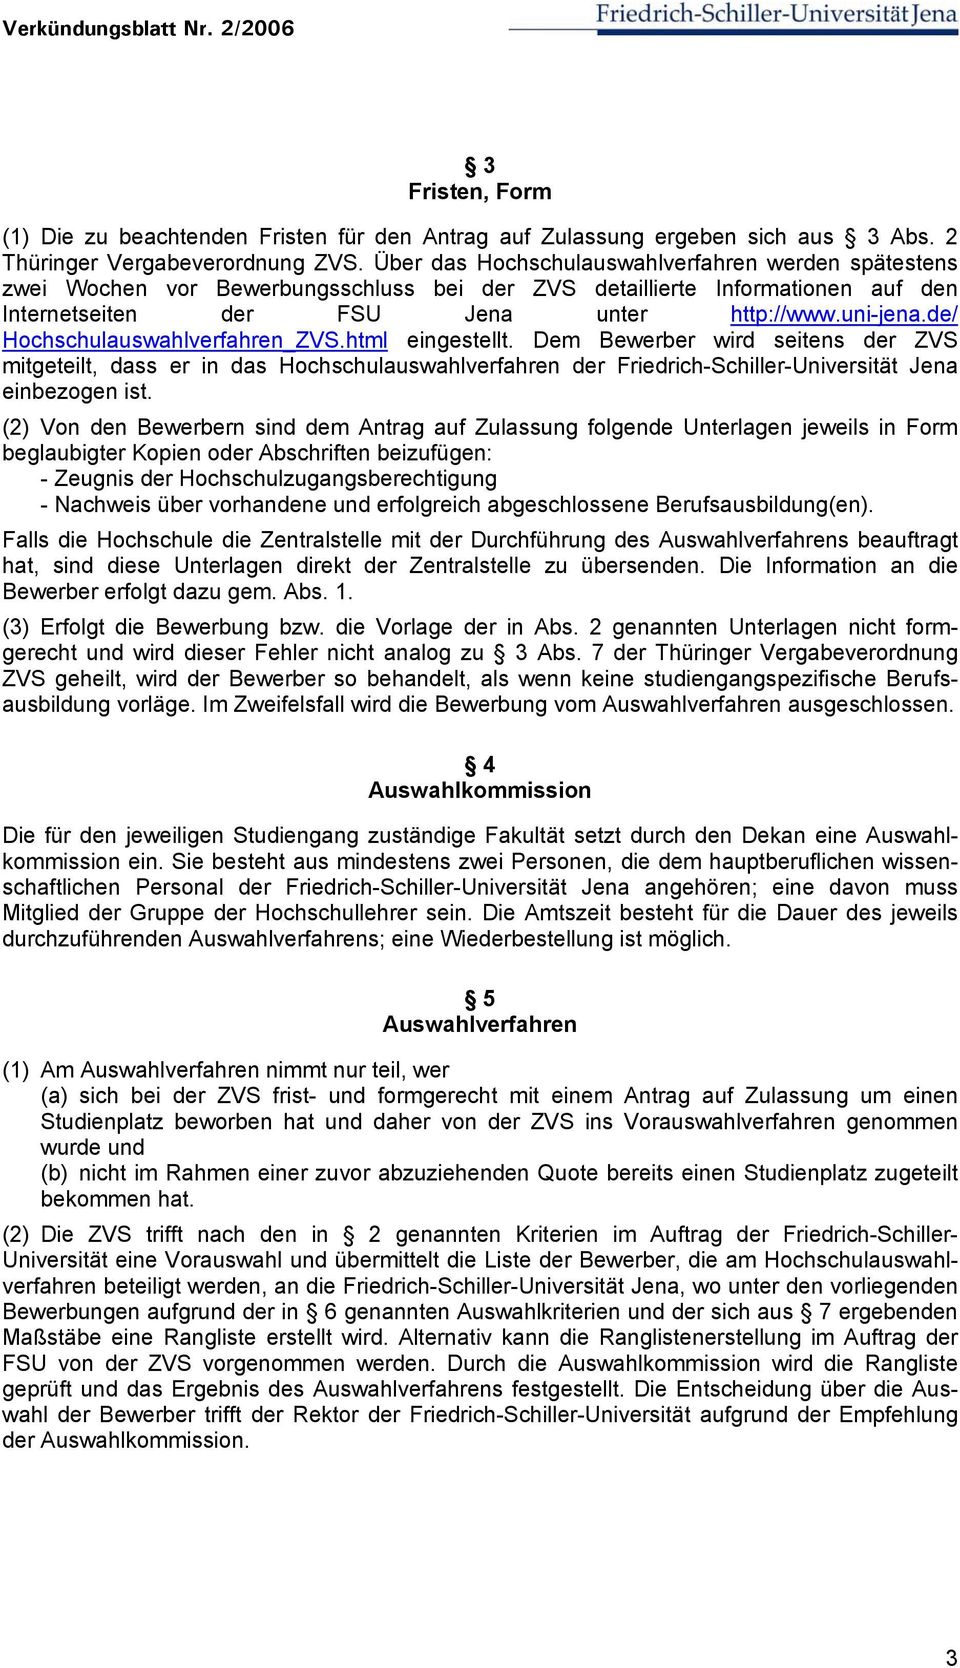 de/ Hochschulauswahlverfahren_ZVS.html eingestellt. Dem Bewerber wird seitens der ZVS mitgeteilt, dass er in das Hochschulauswahlverfahren der Friedrich-Schiller-Universität Jena einbezogen ist.